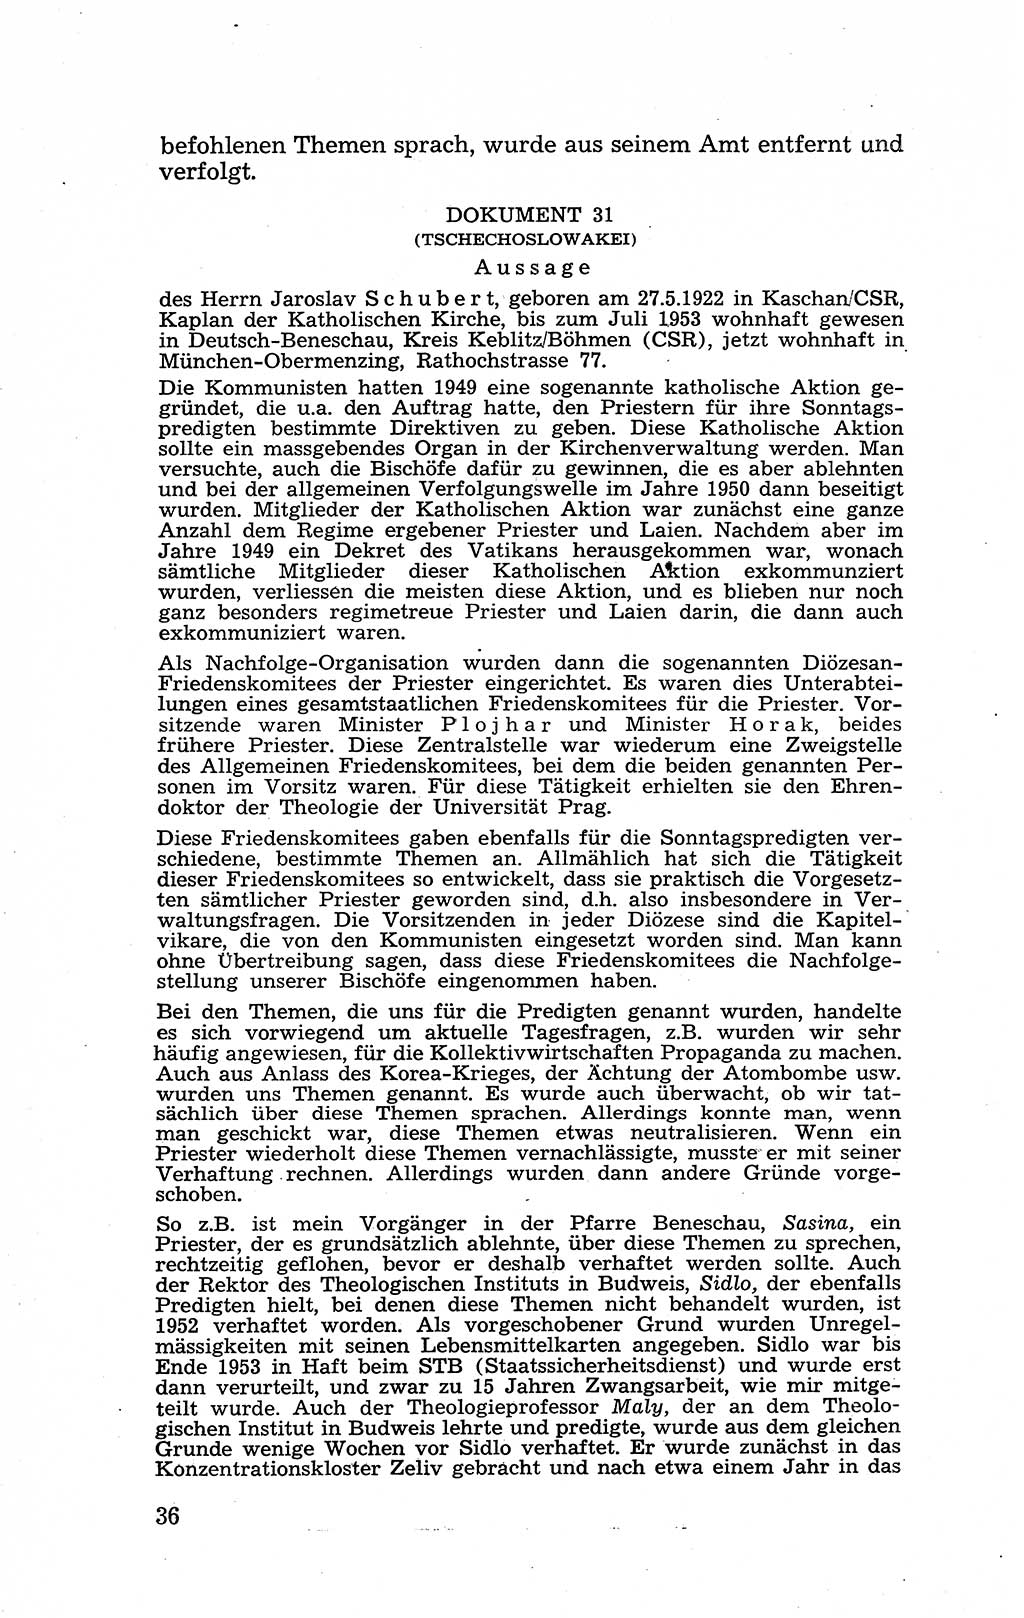 Recht in Fesseln, Dokumente, Internationale Juristen-Kommission [Bundesrepublik Deutschland (BRD)] 1955, Seite 36 (R. Dok. IJK BRD 1955, S. 36)